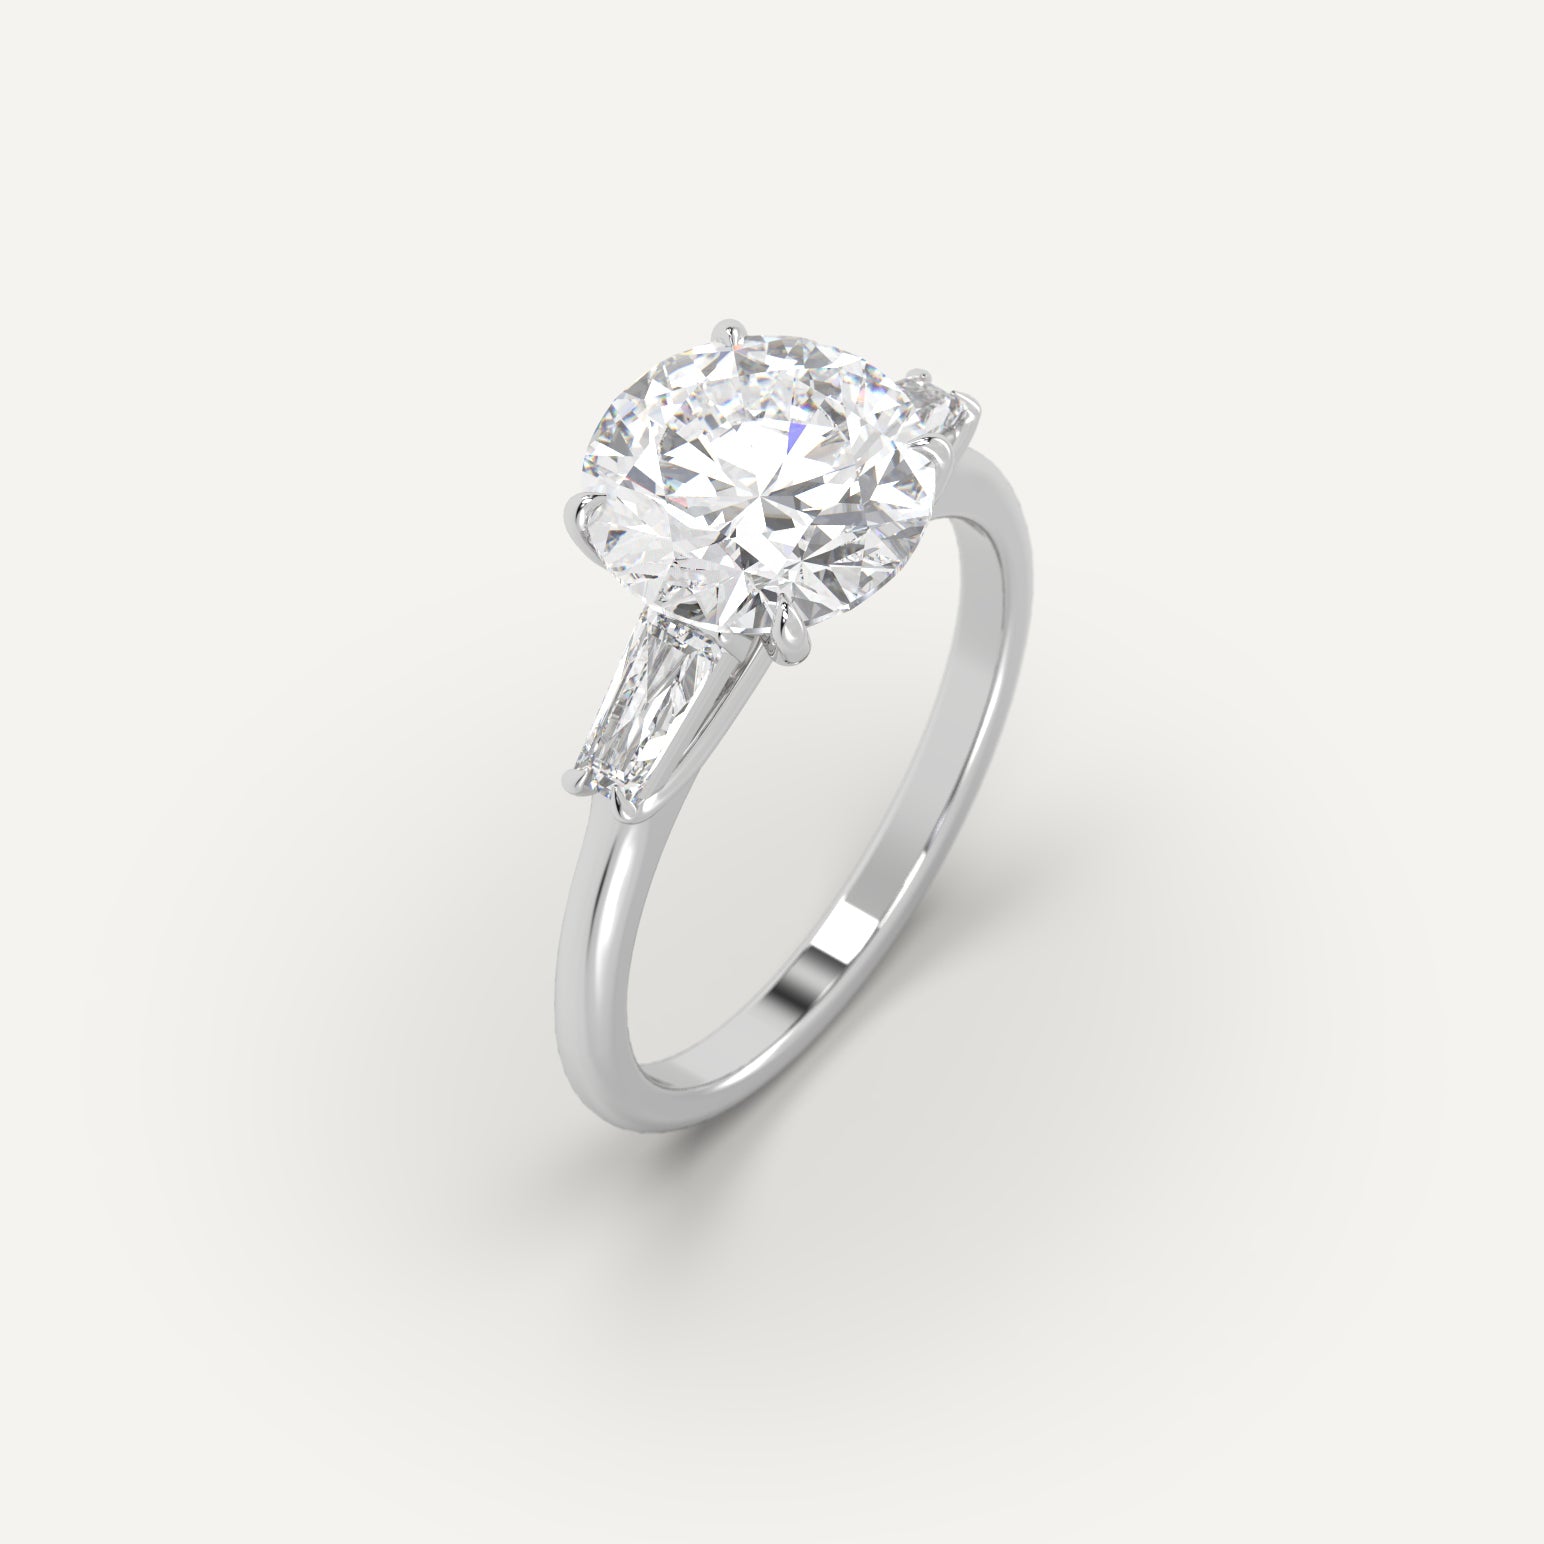 5 carat Round Cut Engagement Ring in 950 Platinum